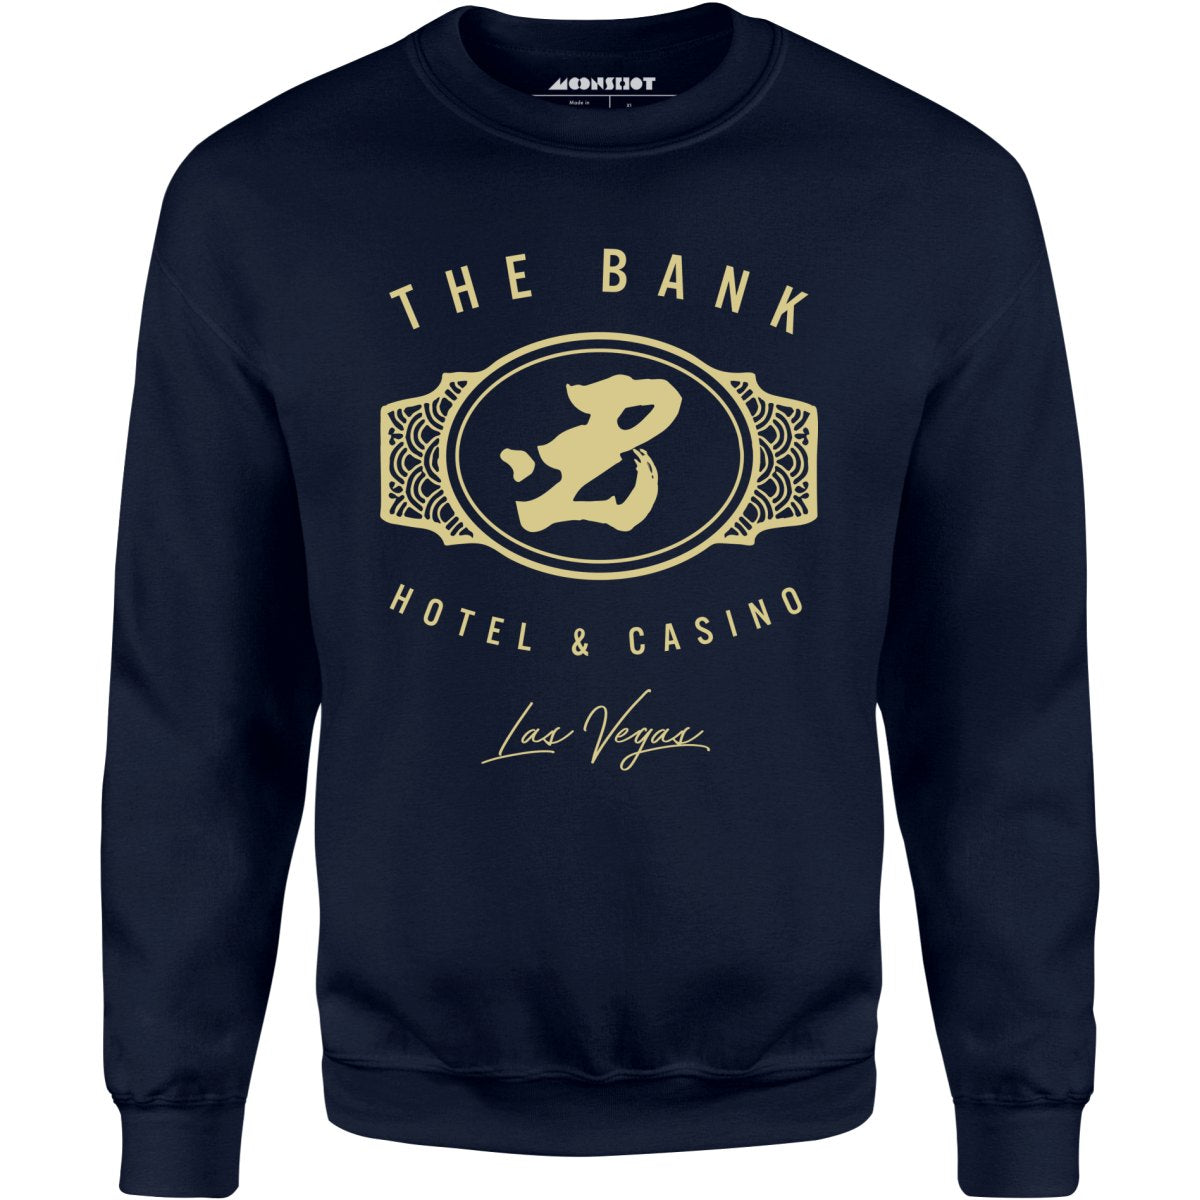 The Bank Hotel & Casino - Ocean's Thirteen - Unisex Sweatshirt